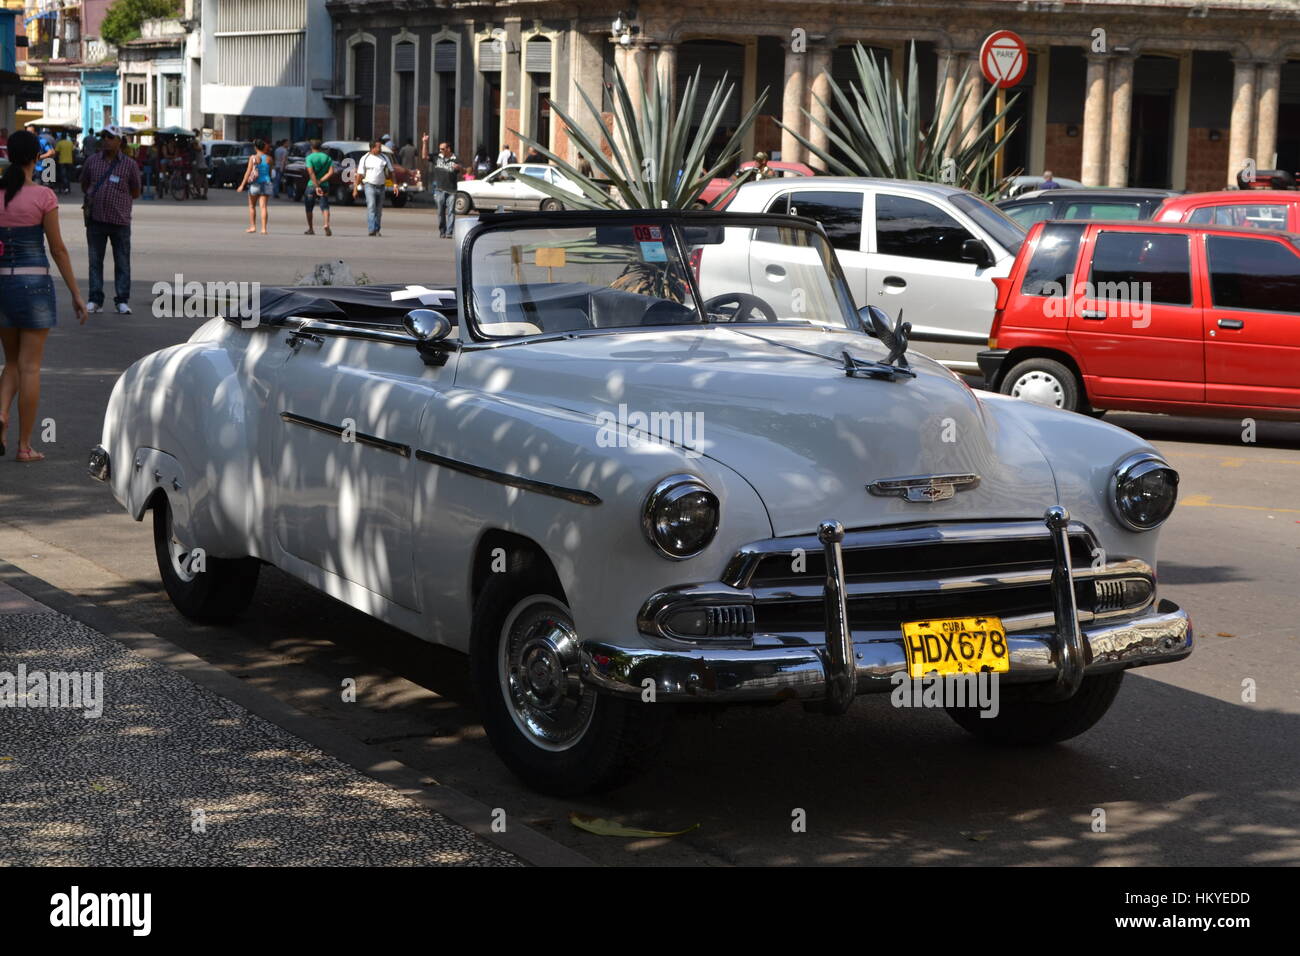 Classic American autovettura convertibile, usato come un taxi a l'Avana, Cuba Foto Stock